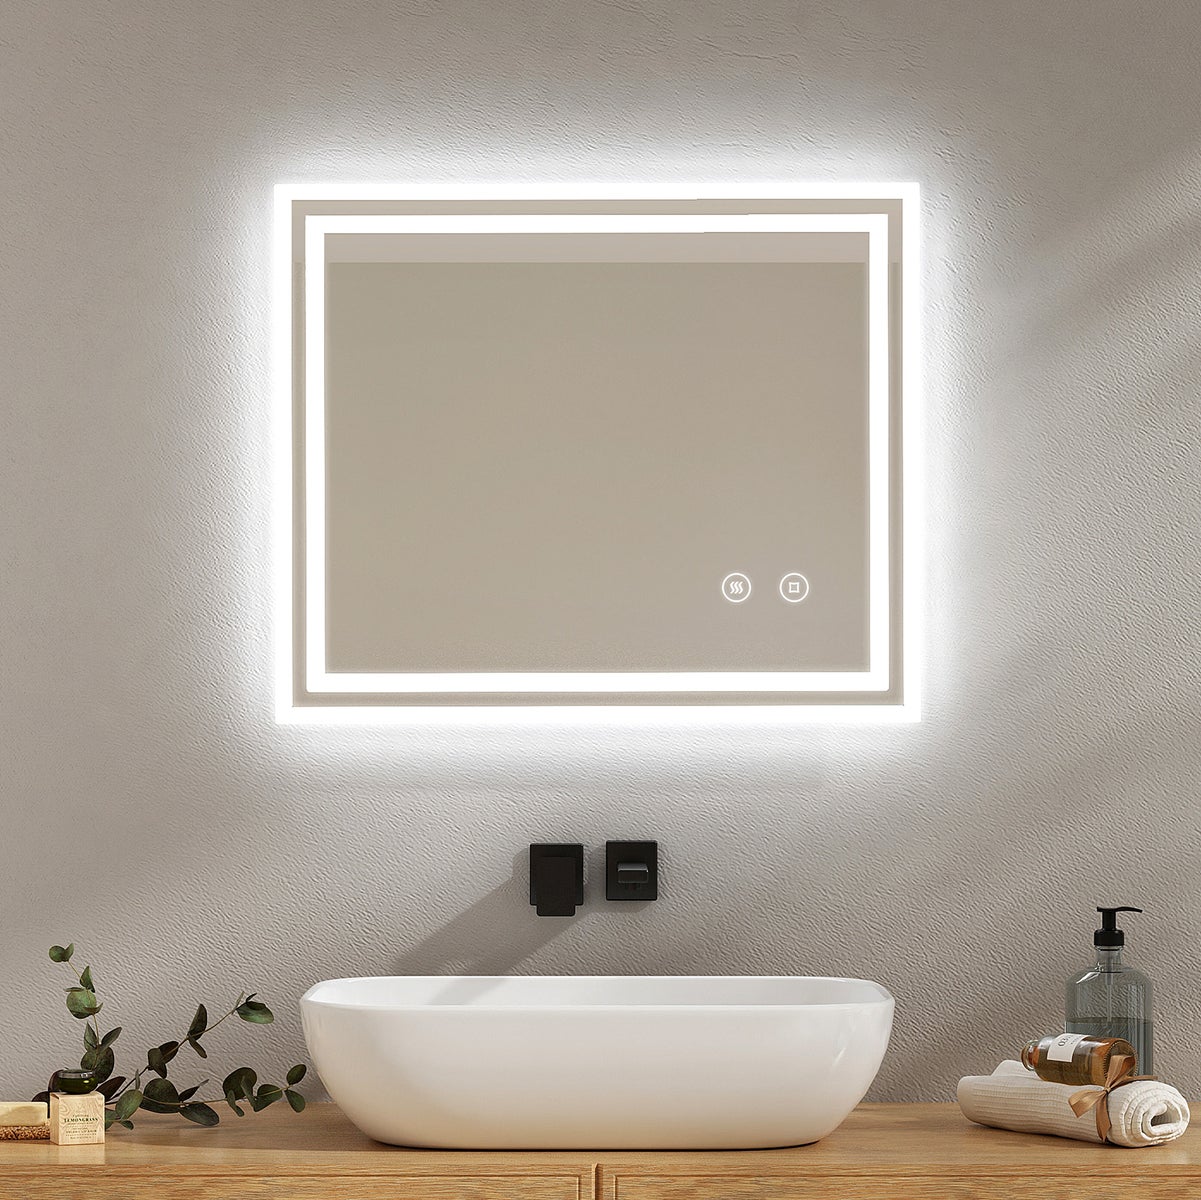 EMKE Badspiegel mit Touch 6500K LED-Beleuchtung eckig, Beschlagfrei, Helligkeit Einstellbar, Memory-Funktion, Horizontal&Vertical 60 x 50 cm